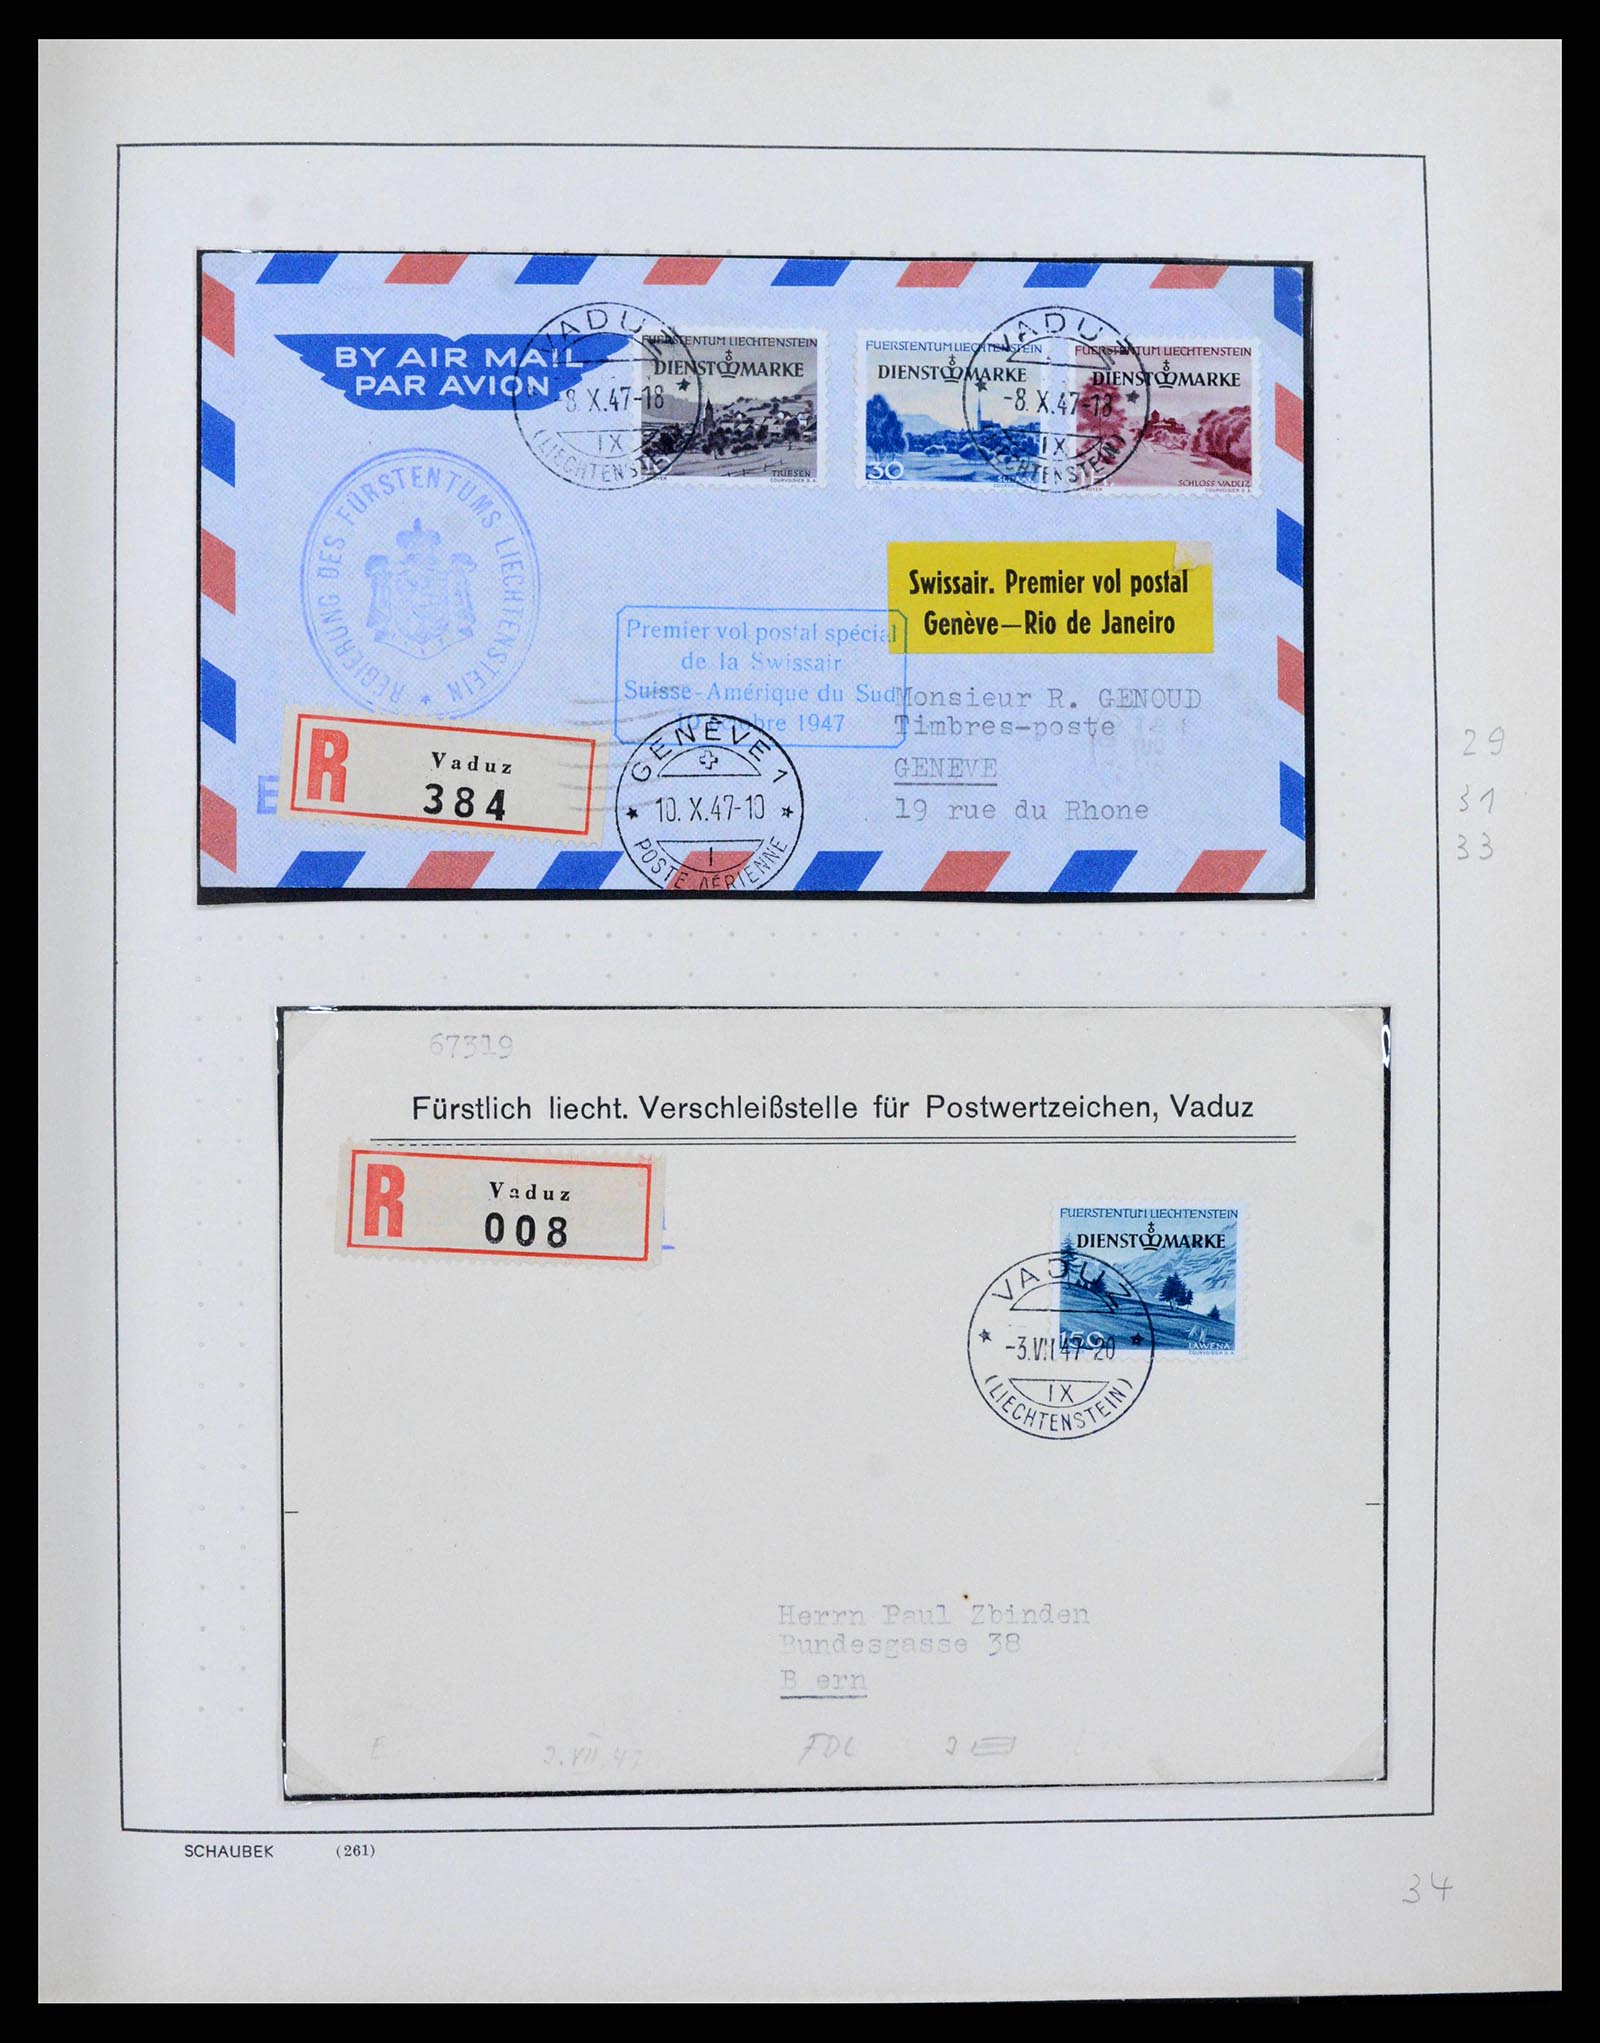 38204 0035 - Stamp collection 38204 Liechtenstein service covers 1932-1989.